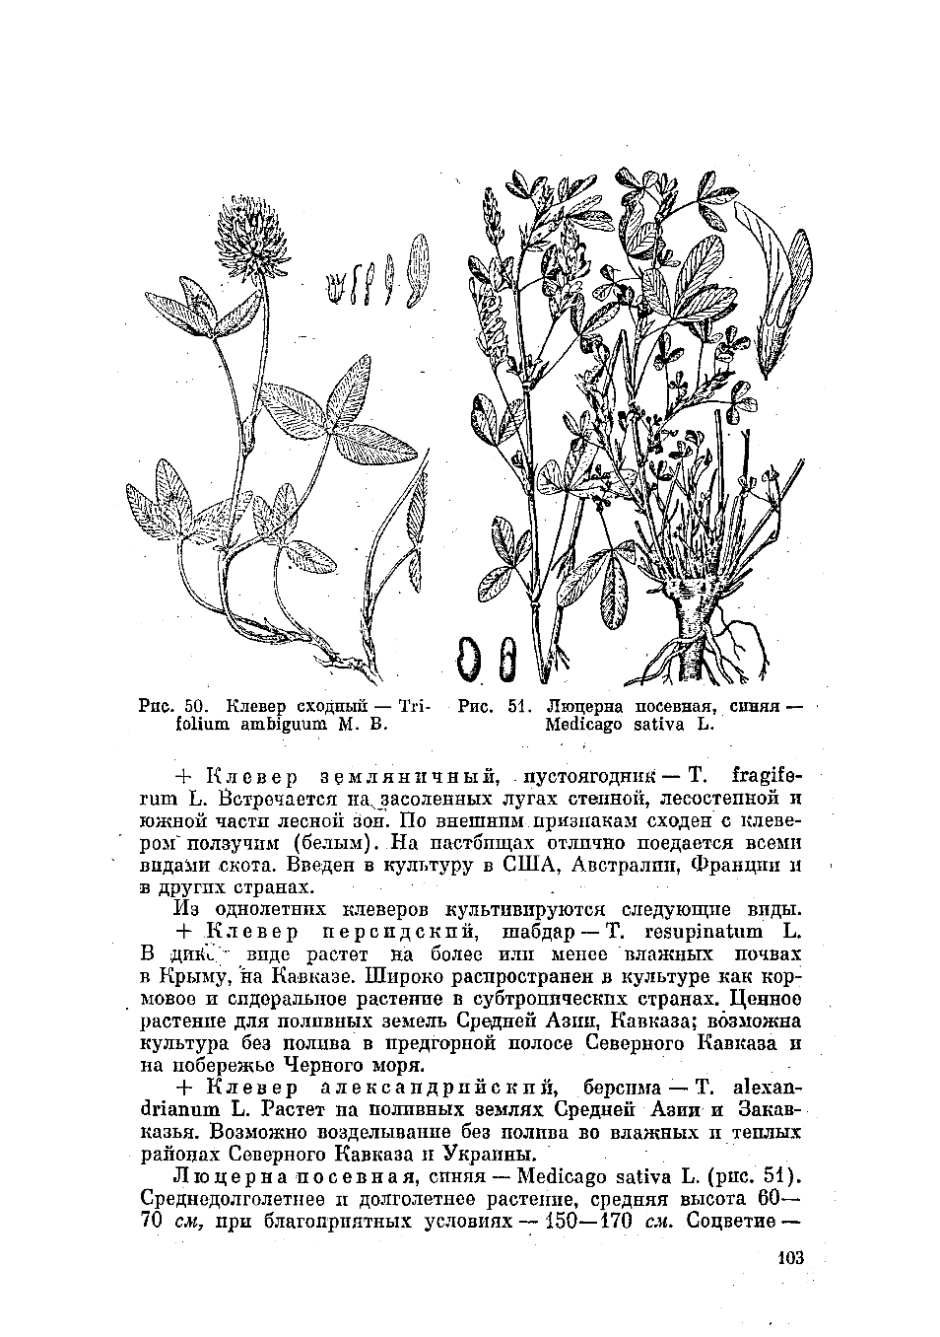 Клевер Луговой - Trifolium pratense l